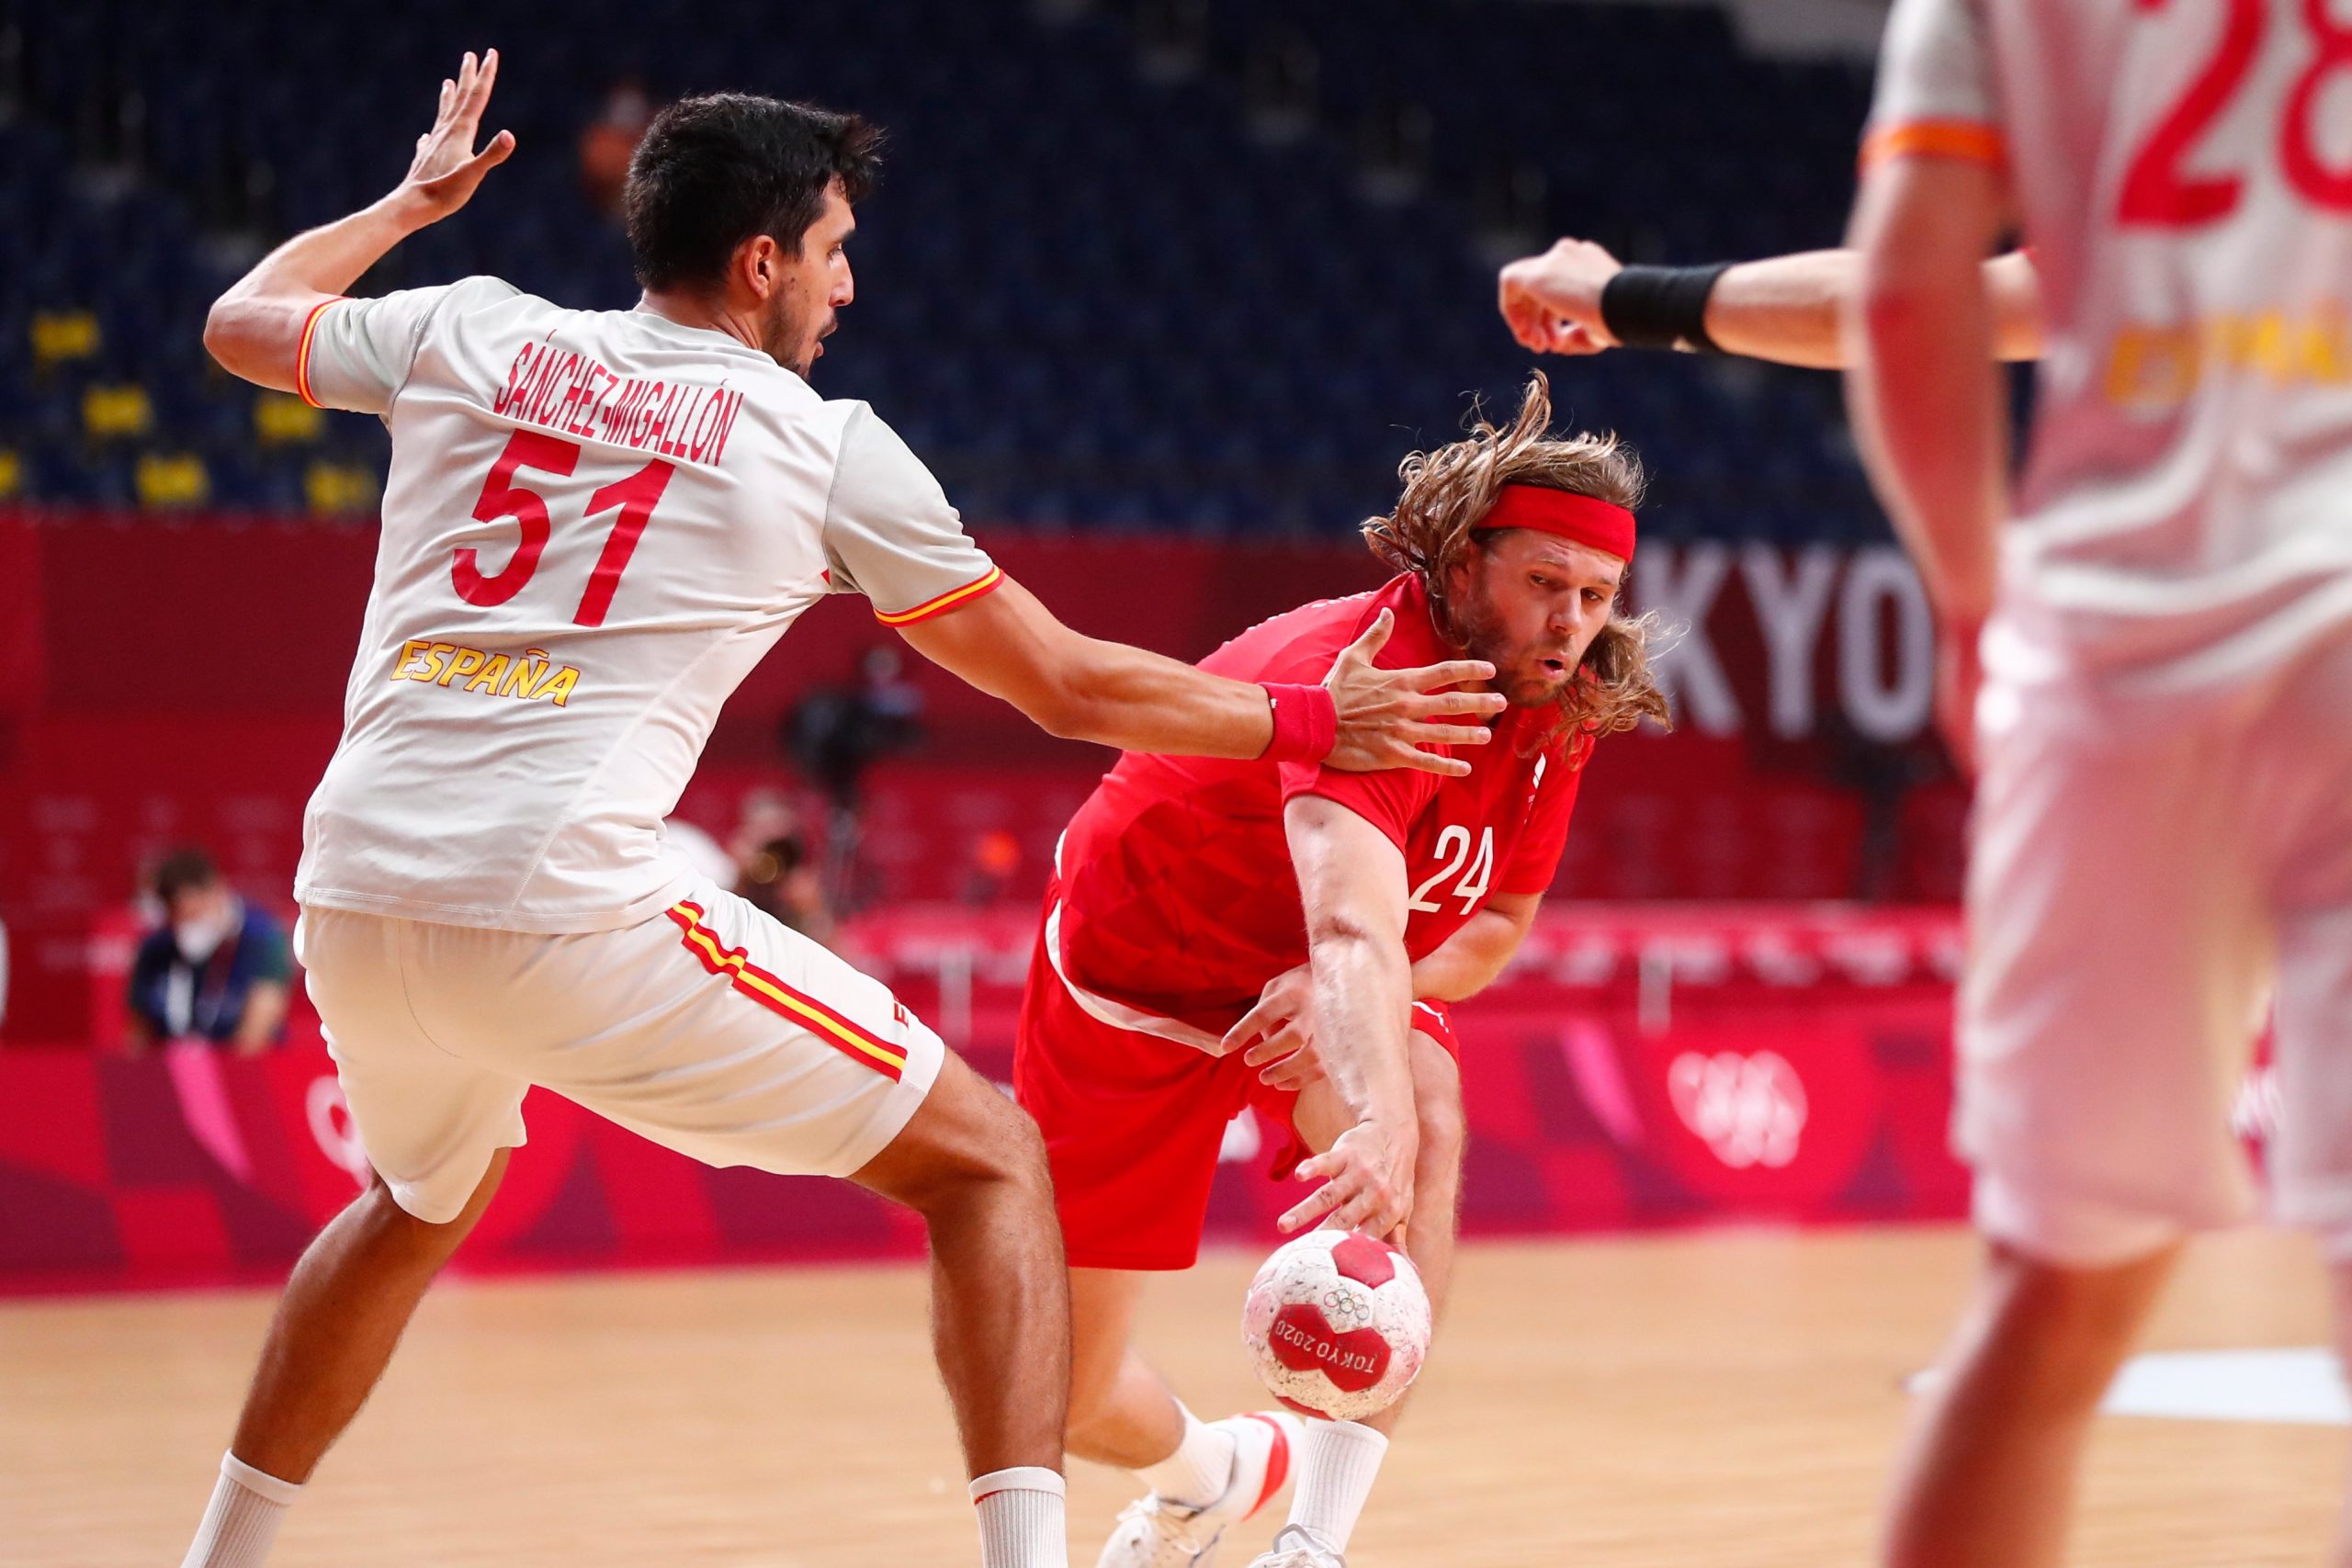 Handebol Masculino: França derrota o Egito, e Dinamarca despacha Espanha nas semifinais